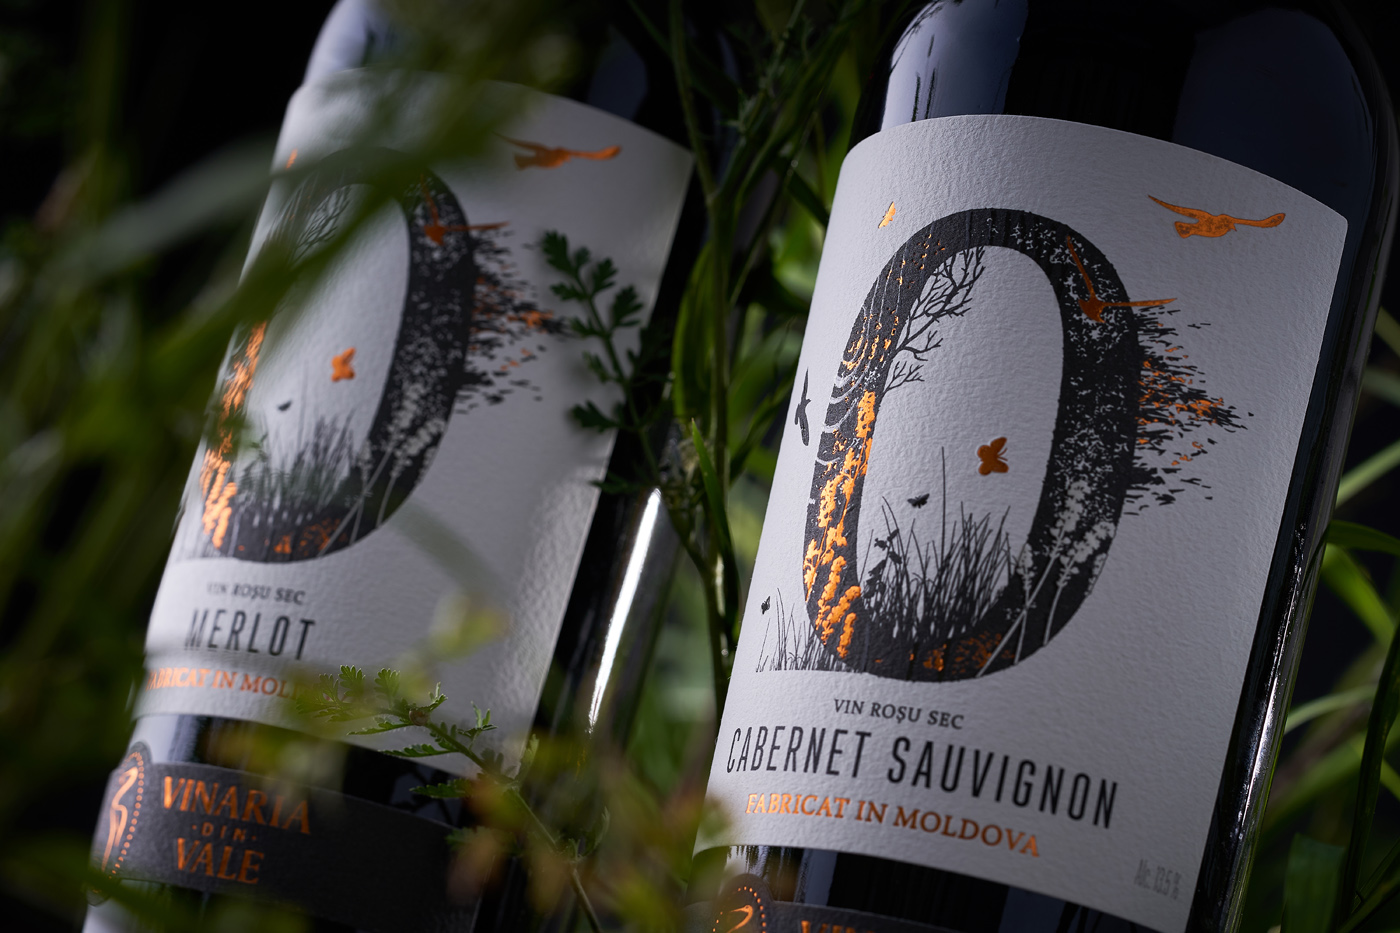 43oz.com Design Studio Create Natural Wine Packaging Label Design for Zero Sulfiti